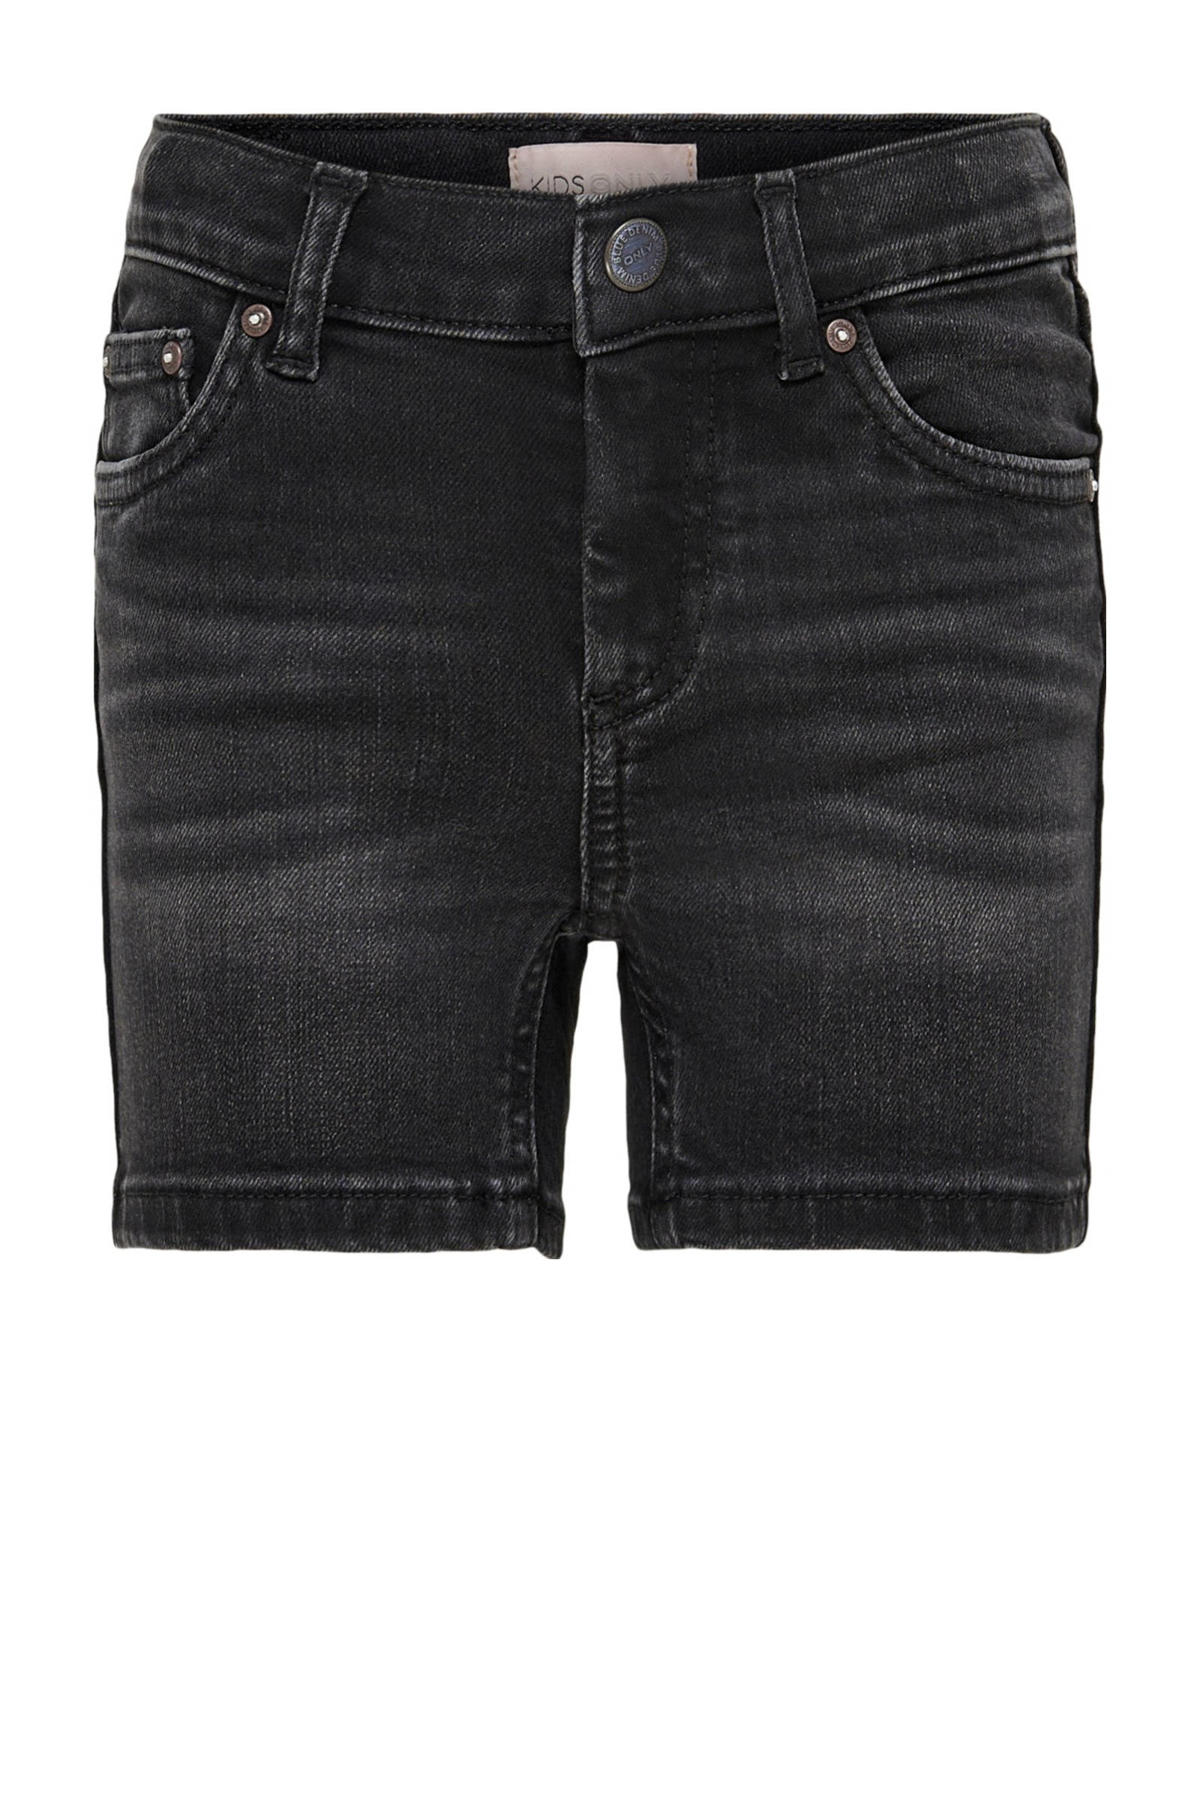 KIDS ONLY KONBLUSH | short fit wehkamp denim black GIRL jeans regular